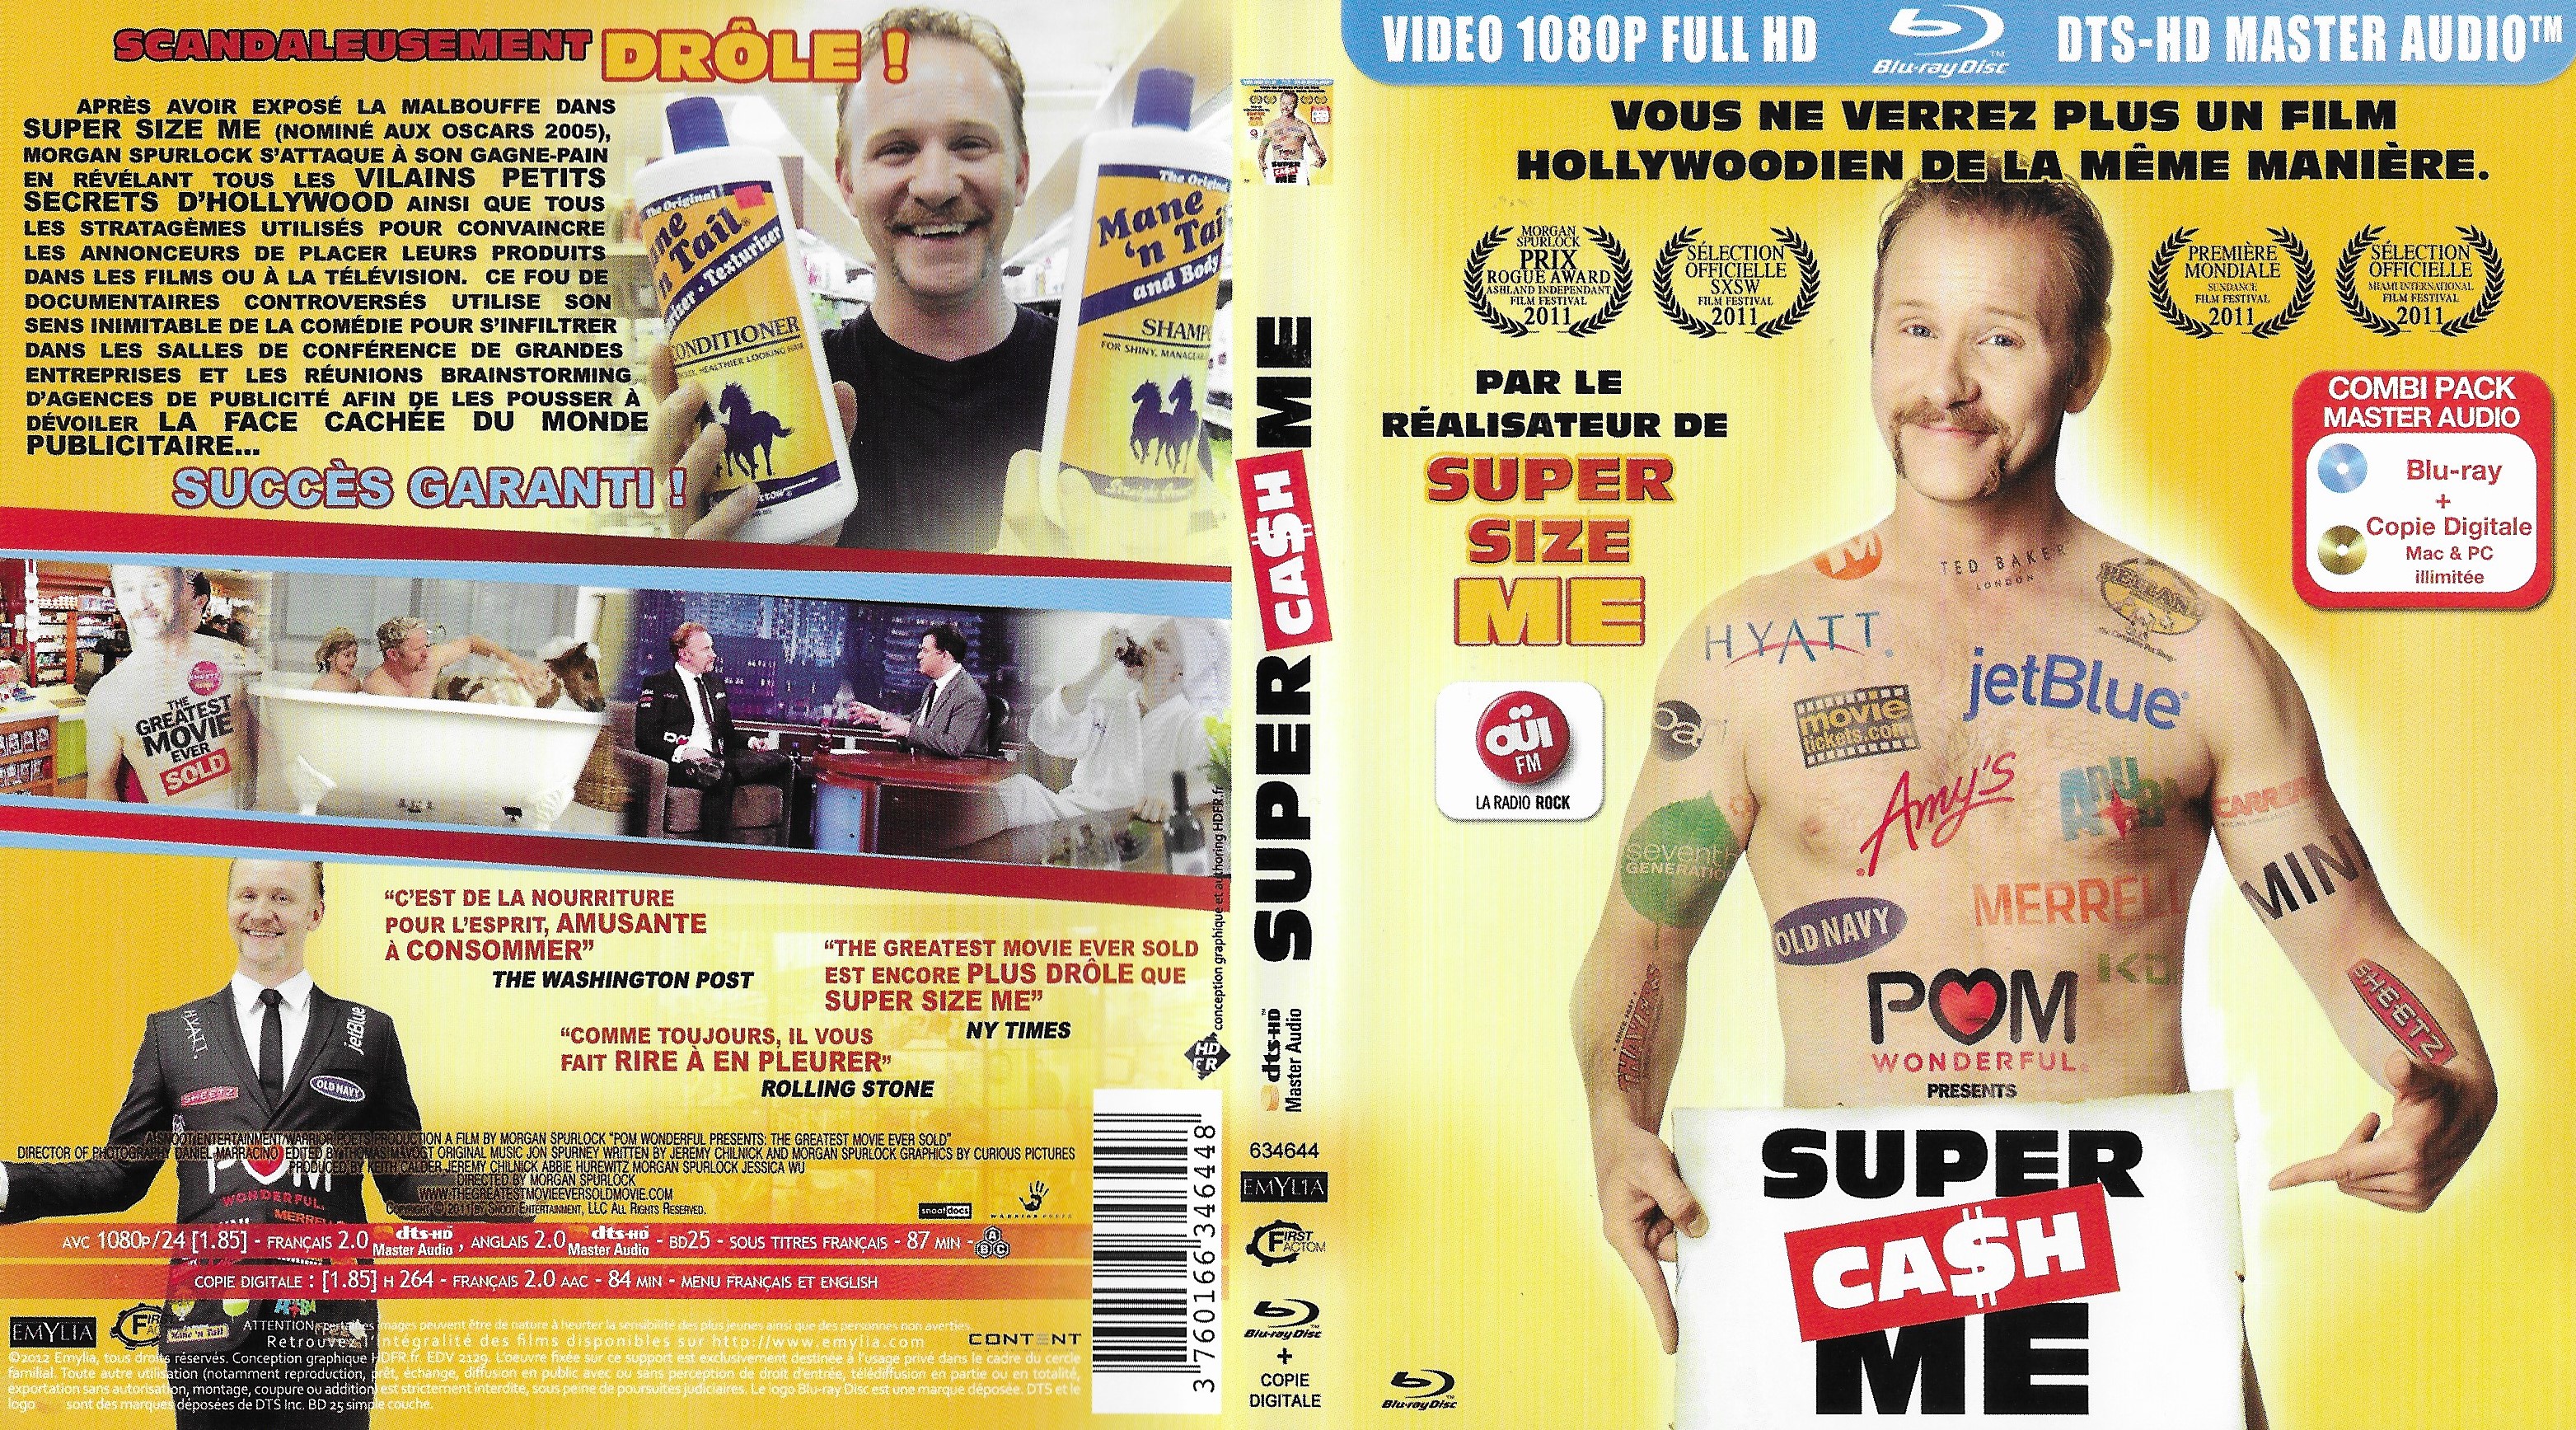 Jaquette DVD Super cash me (BLU-RAY)